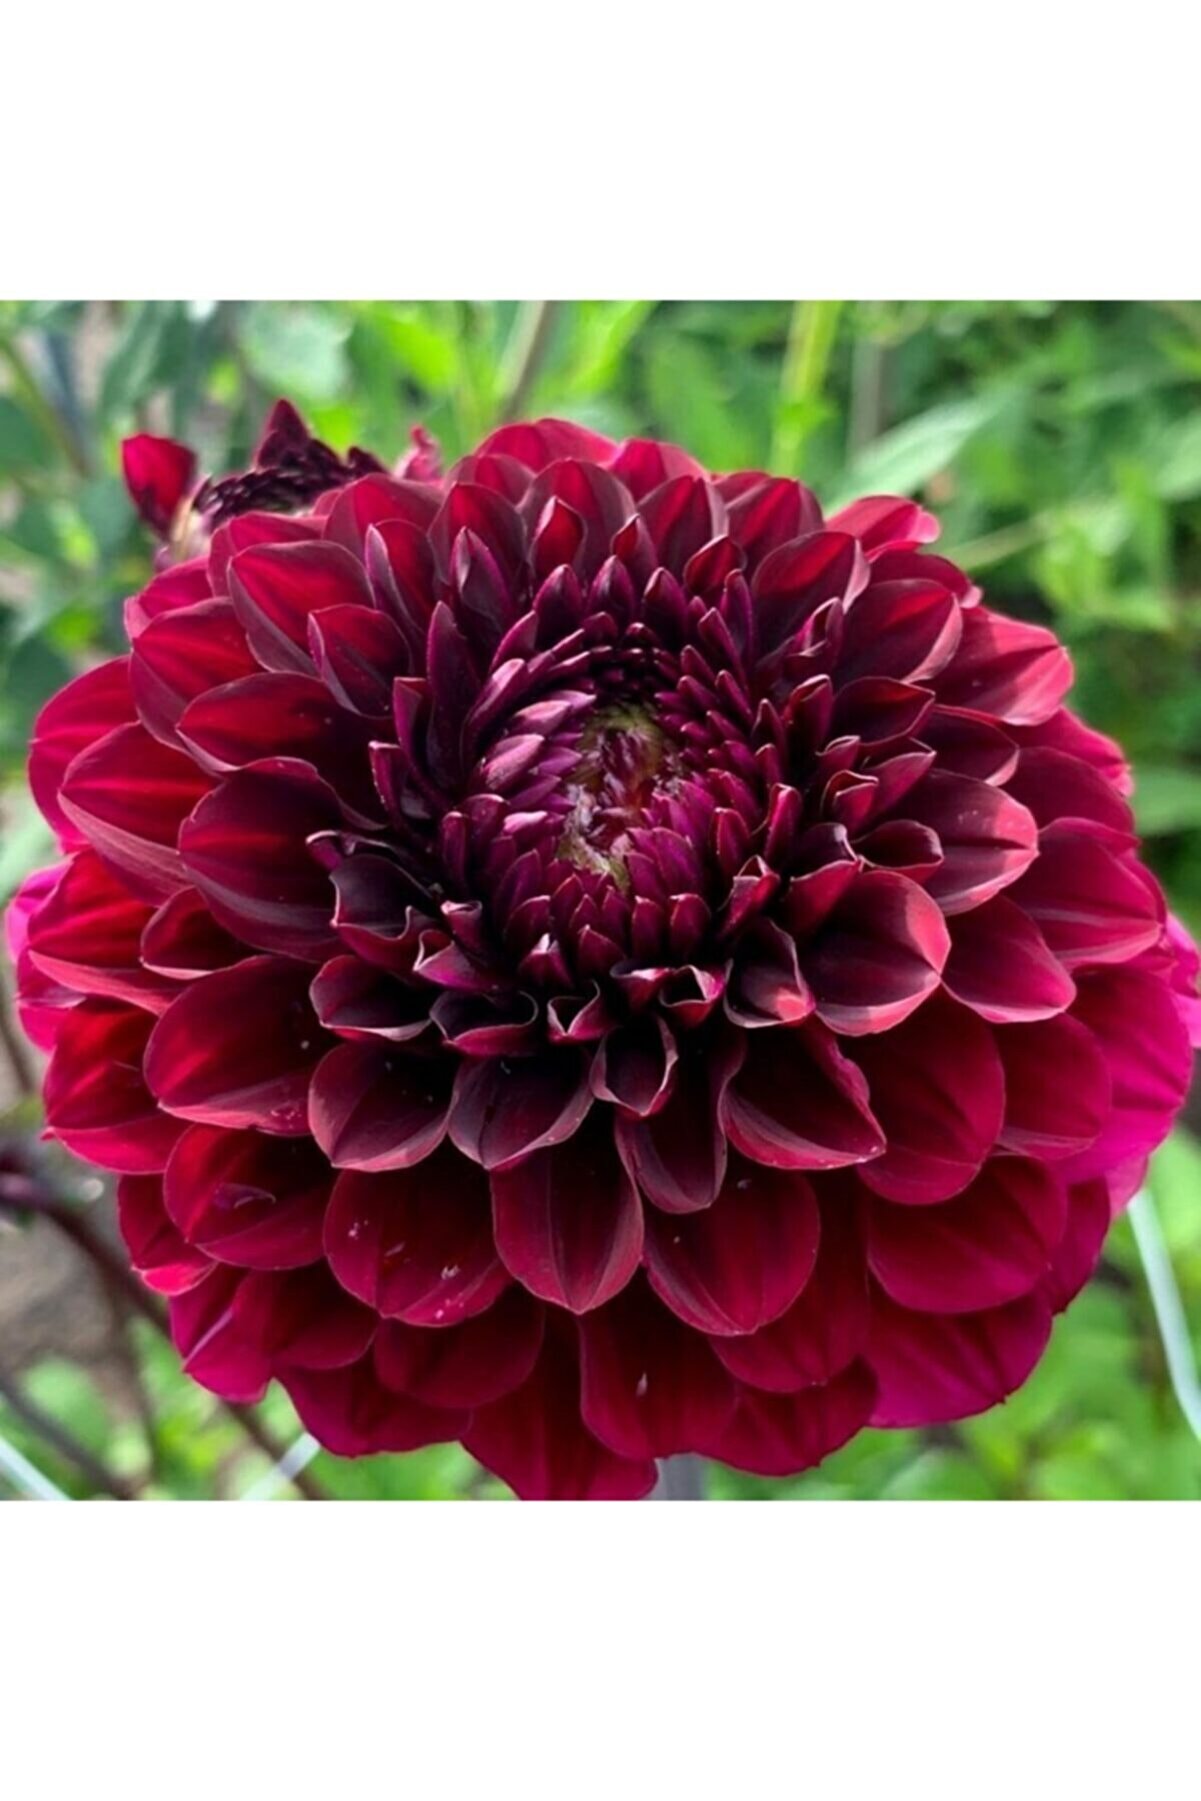 KAMONDO TOHUM 10 Adet Bordo Renkli Kirli Hanım Çiçeği Tohumu Kokulu